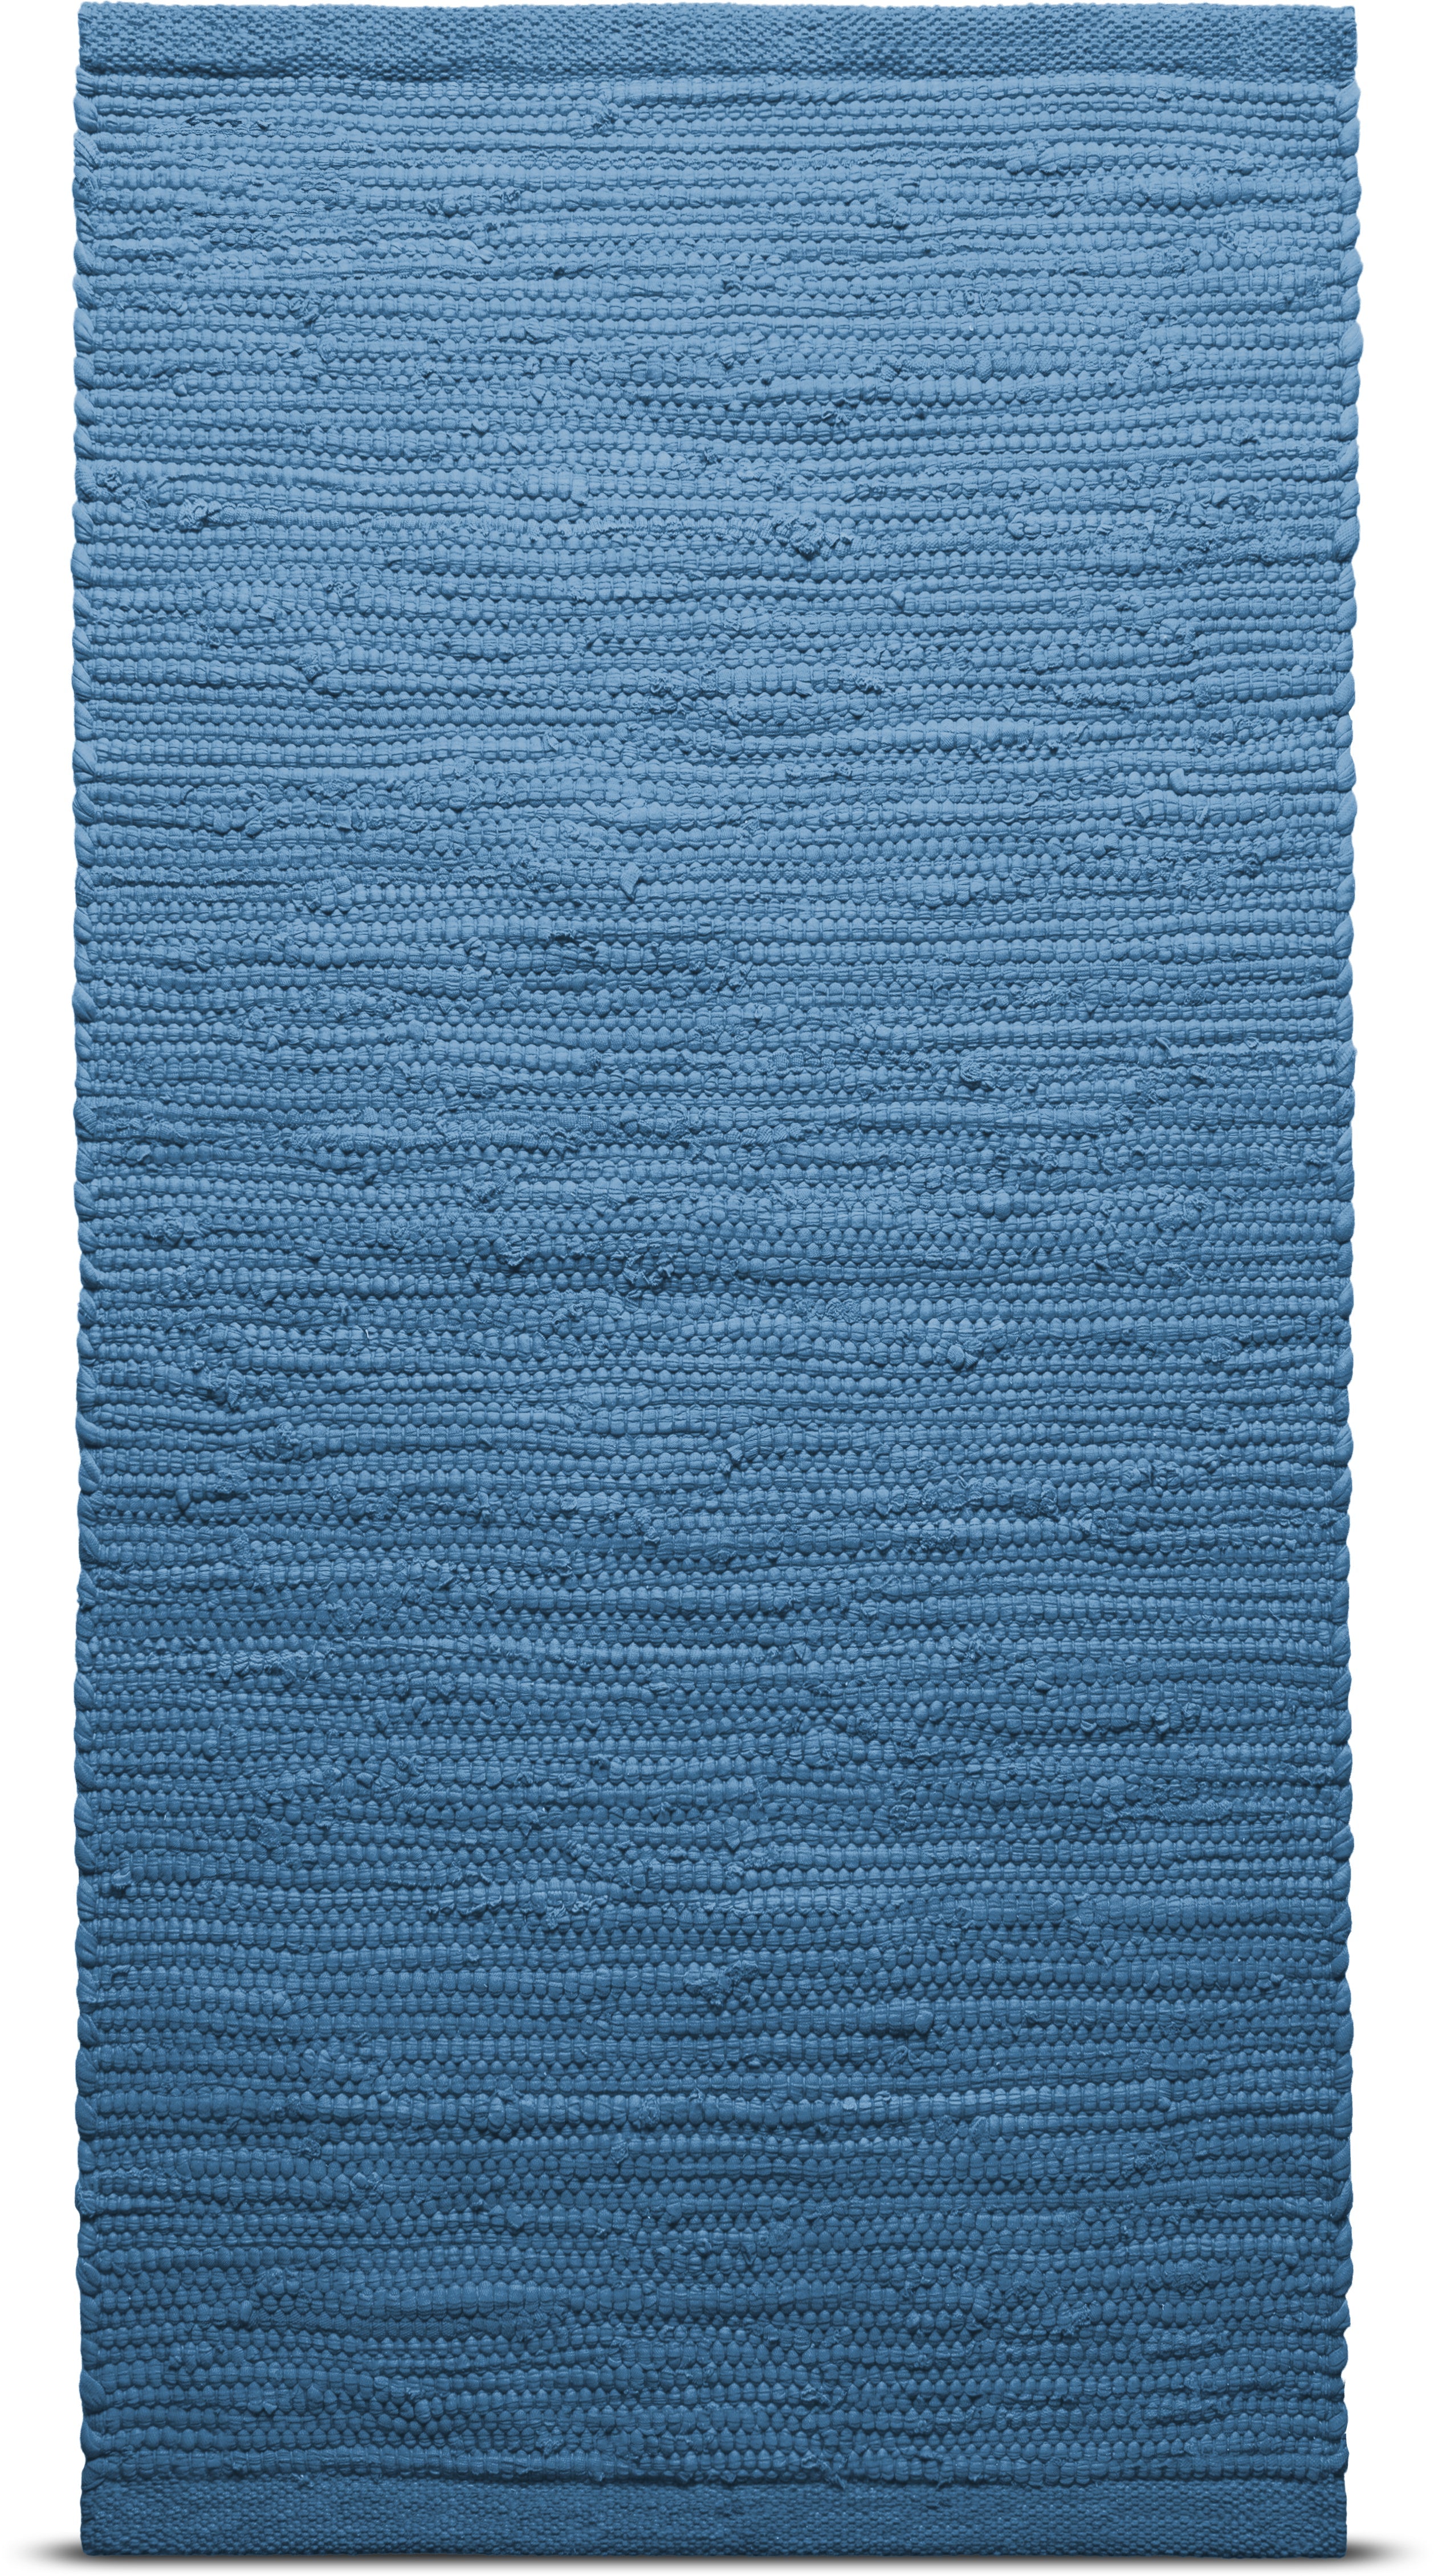 Tappeto di cotone solido 140 x 200 cm, Pacifico